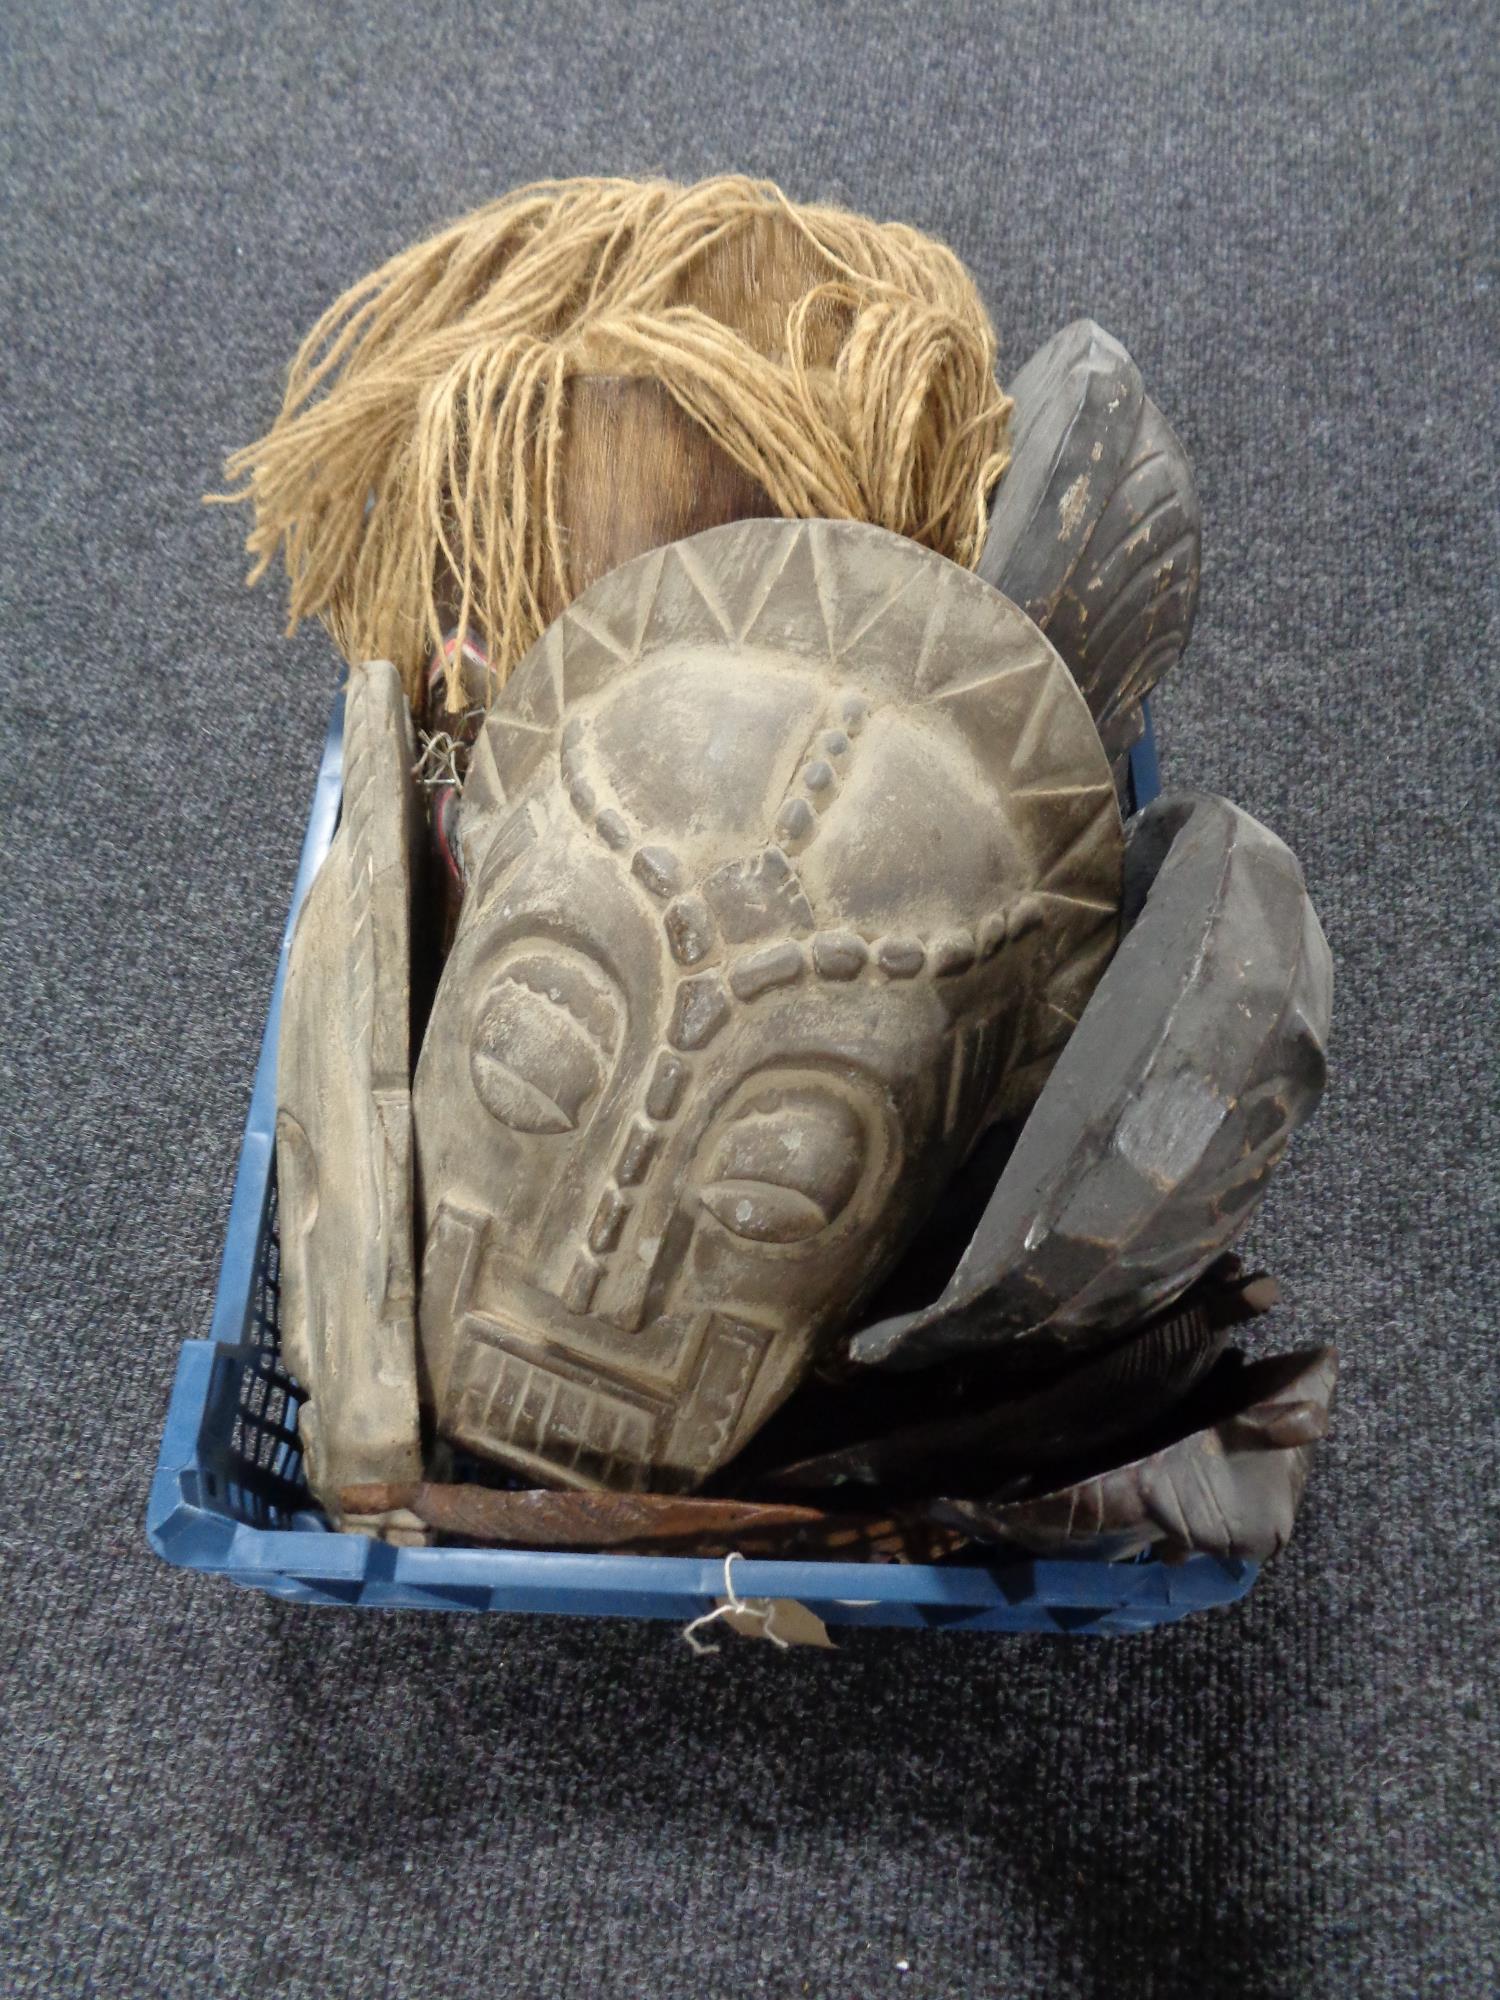 A basket of tribal masks